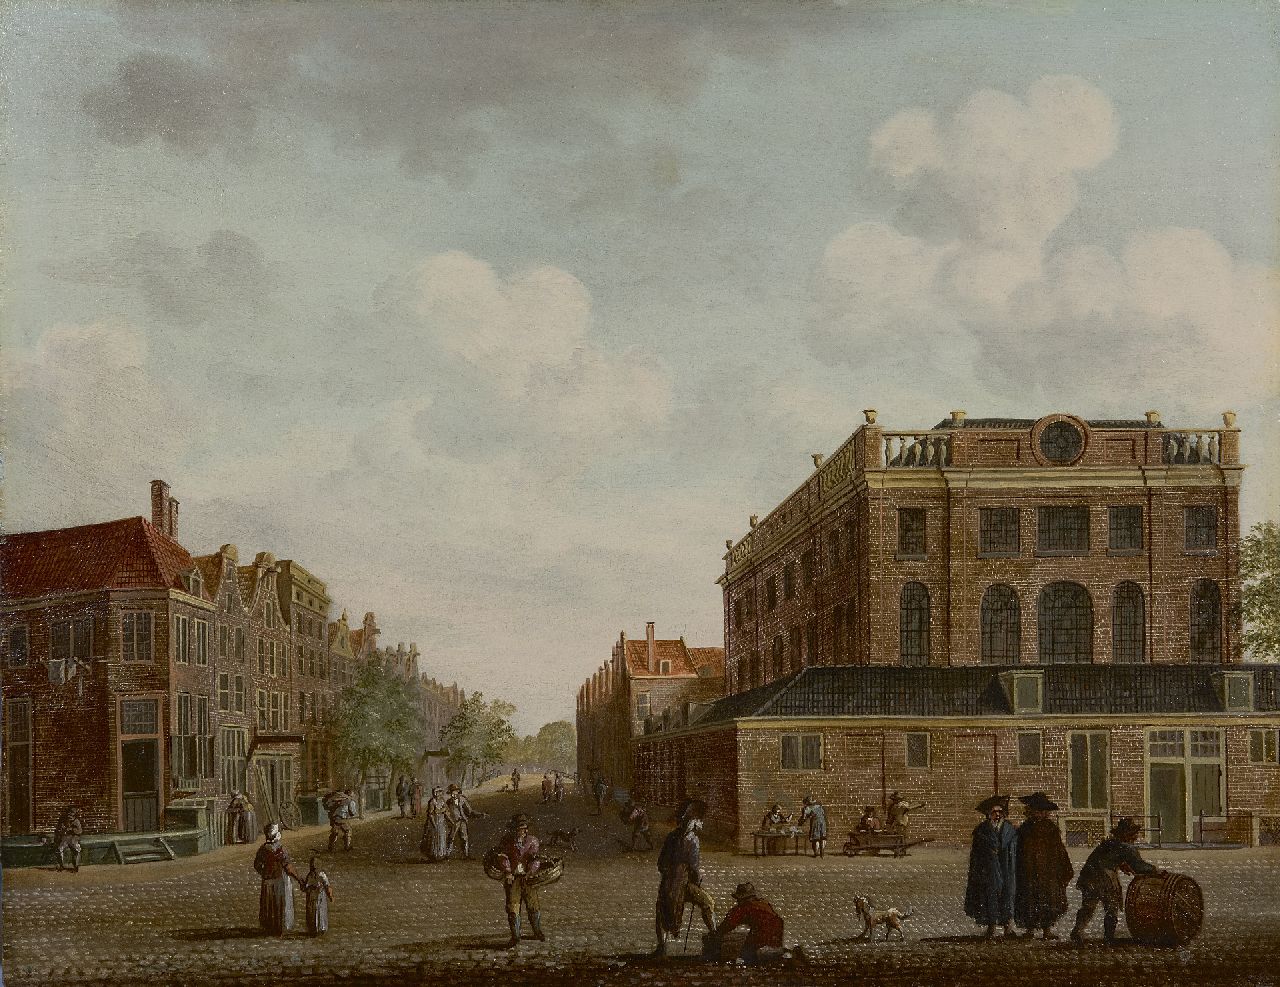 Fredericus Theodorus Renard | De Portugese Synagoge gezien vanuit de Jodenbreestraat in Amsterdam, olieverf op paneel, 33,8 x 43,8 cm, eind 18e eeuw